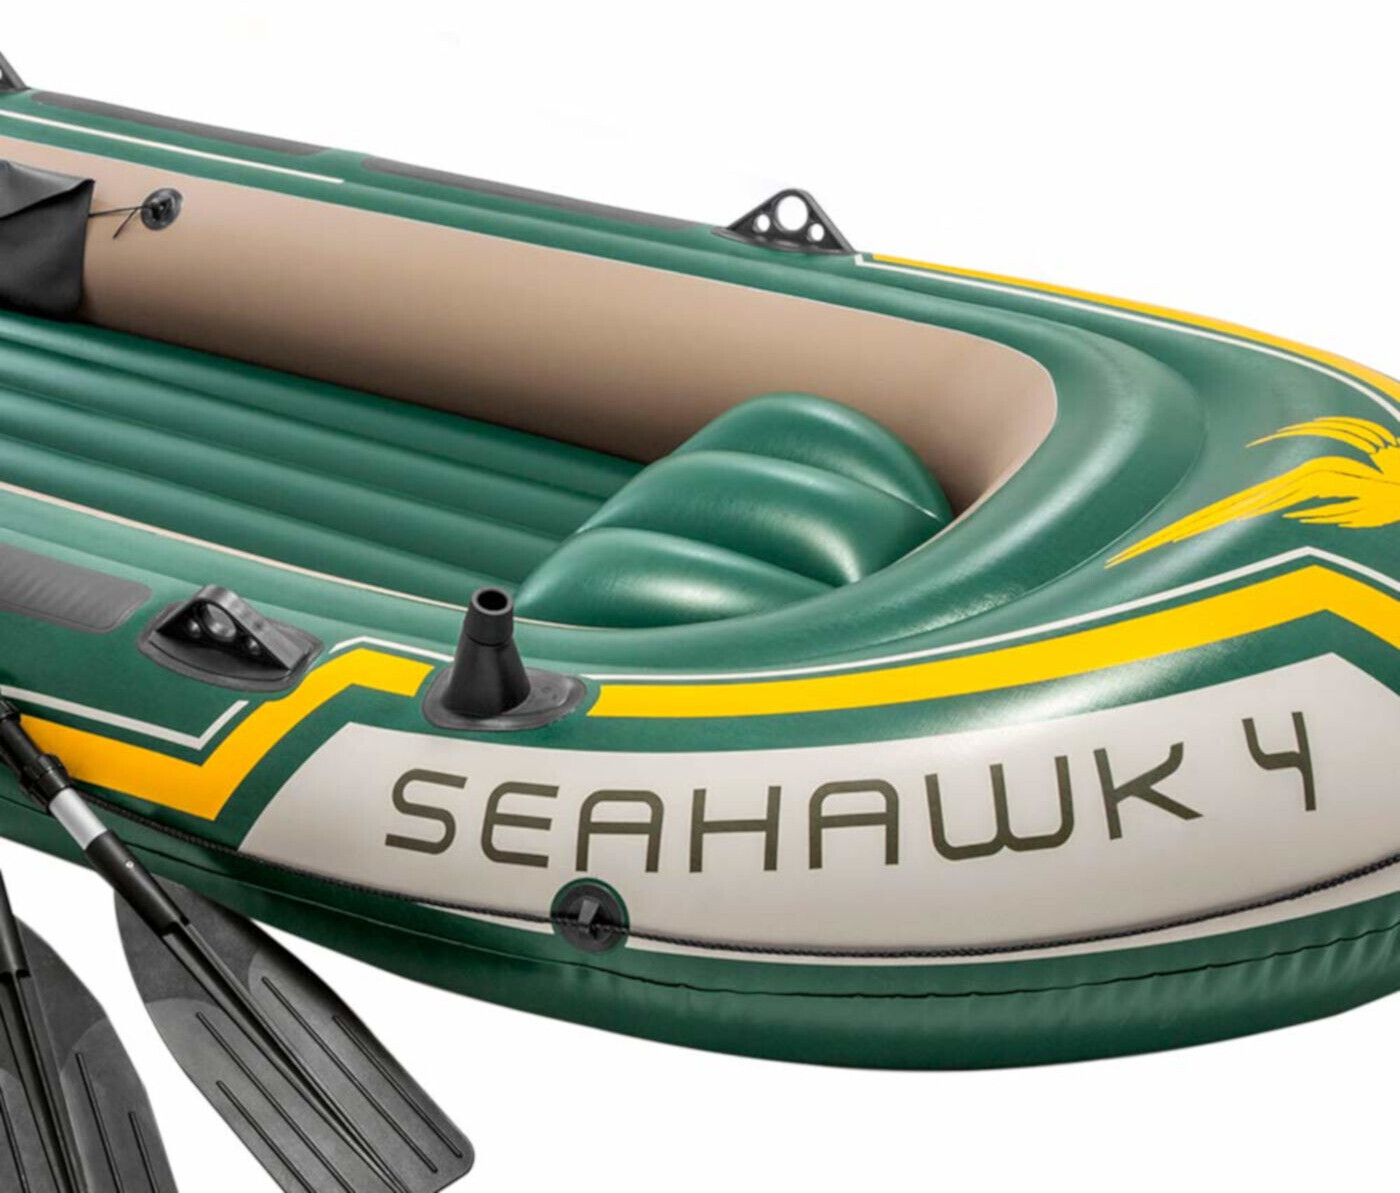 Intex Seahawk 4 ab 94,99 €  Preisvergleich bei